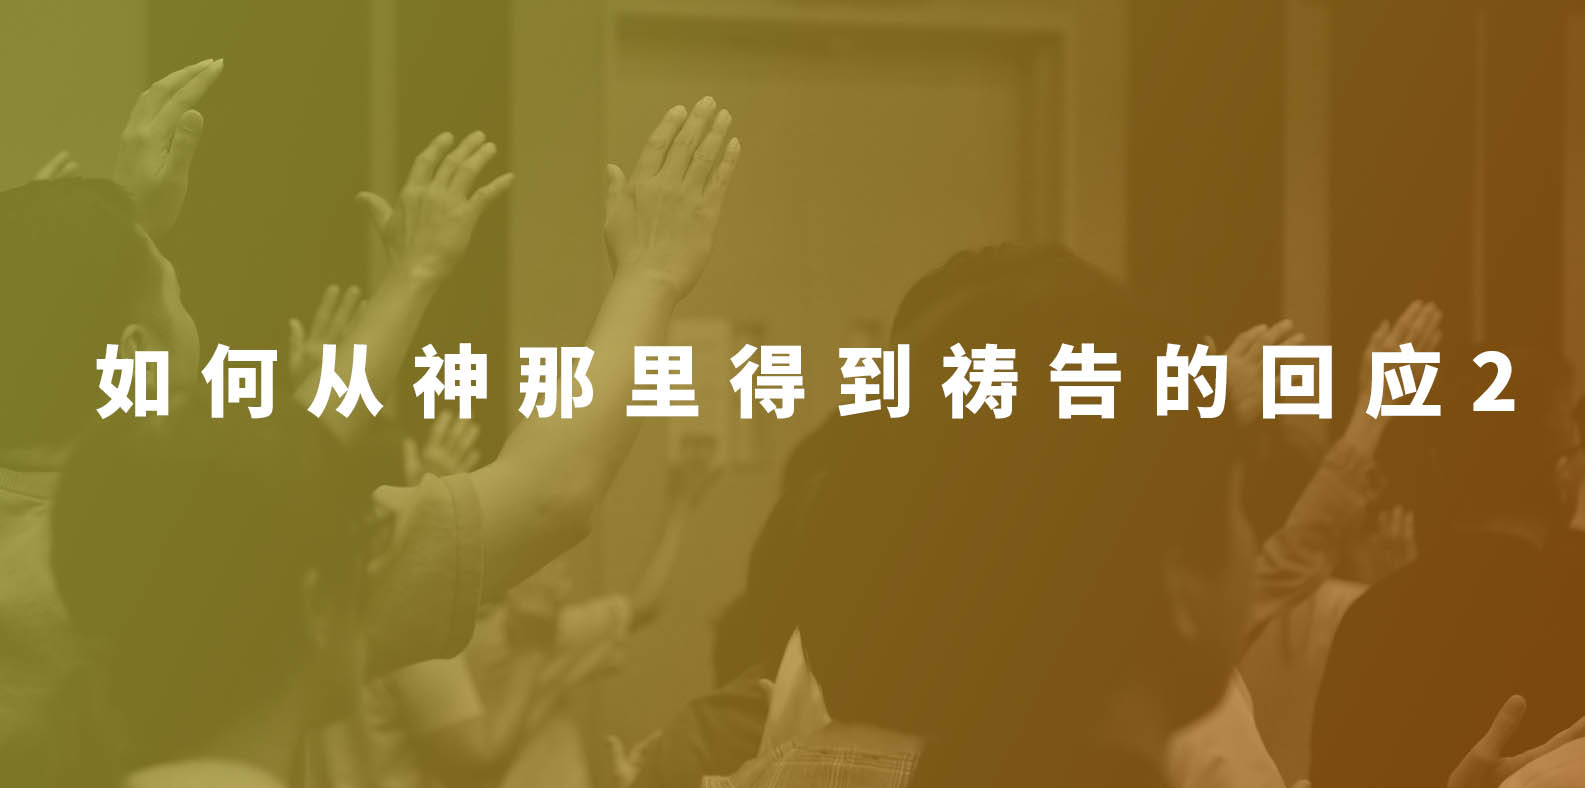 5项祈求的祷告 | 房角石教会 Cornerstone Mandarin Congregation | 华文教会 Chinese Church